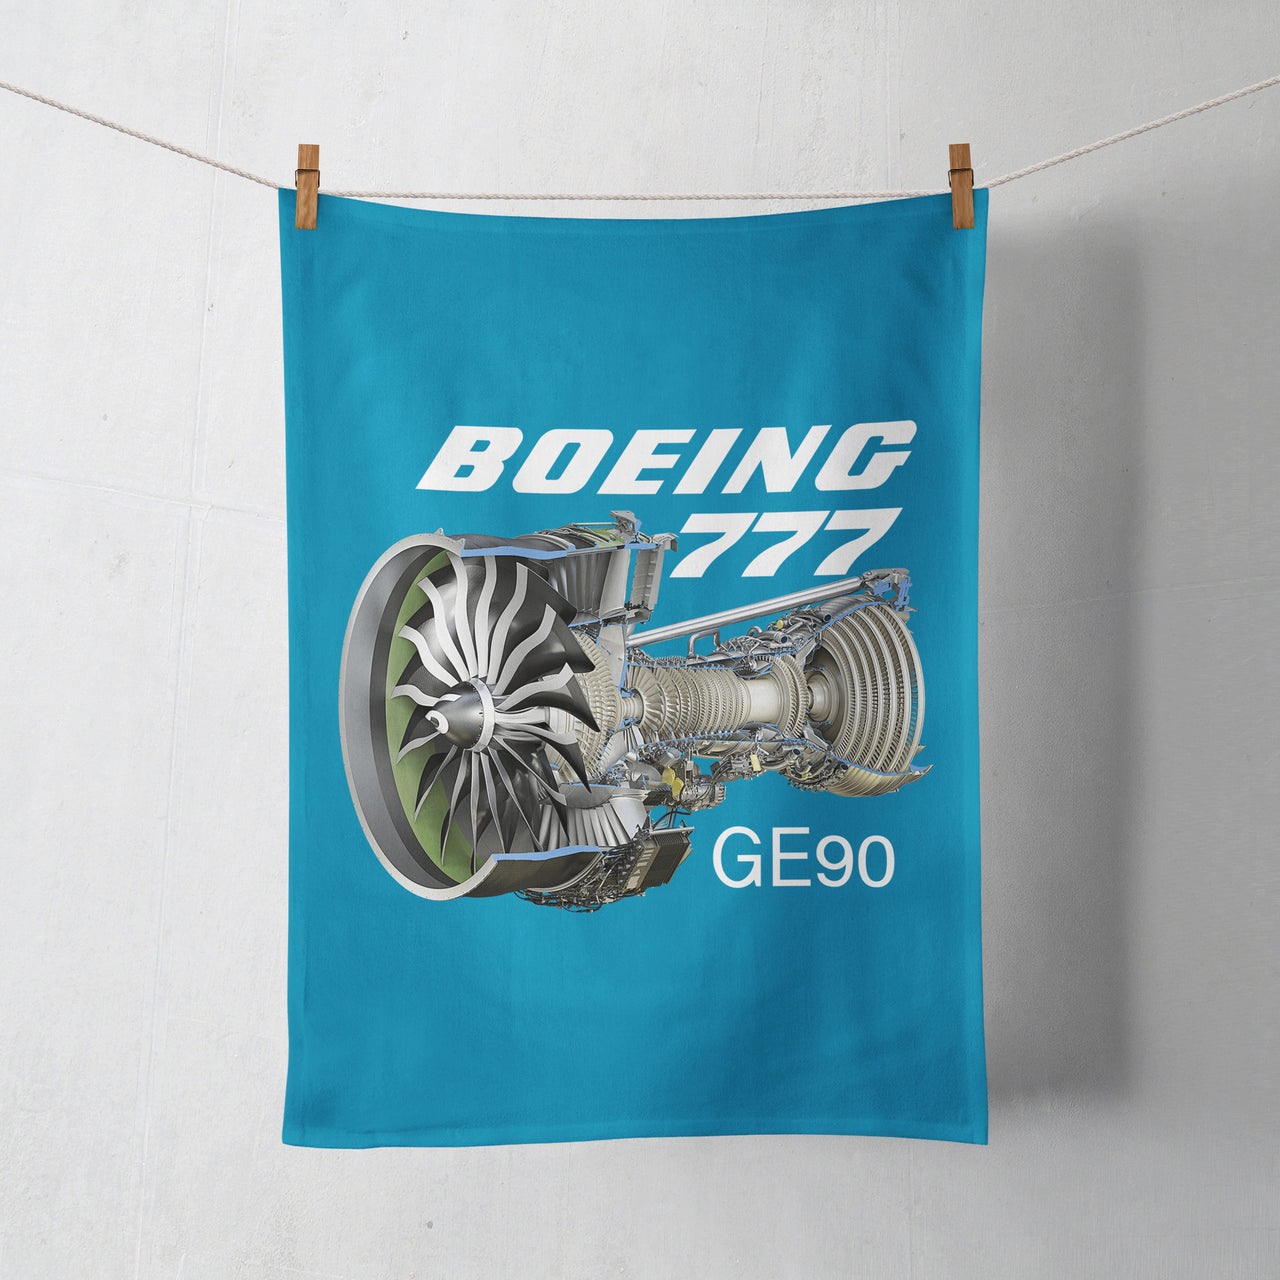 Boeing 777 & GE90 Engine Designed Towels